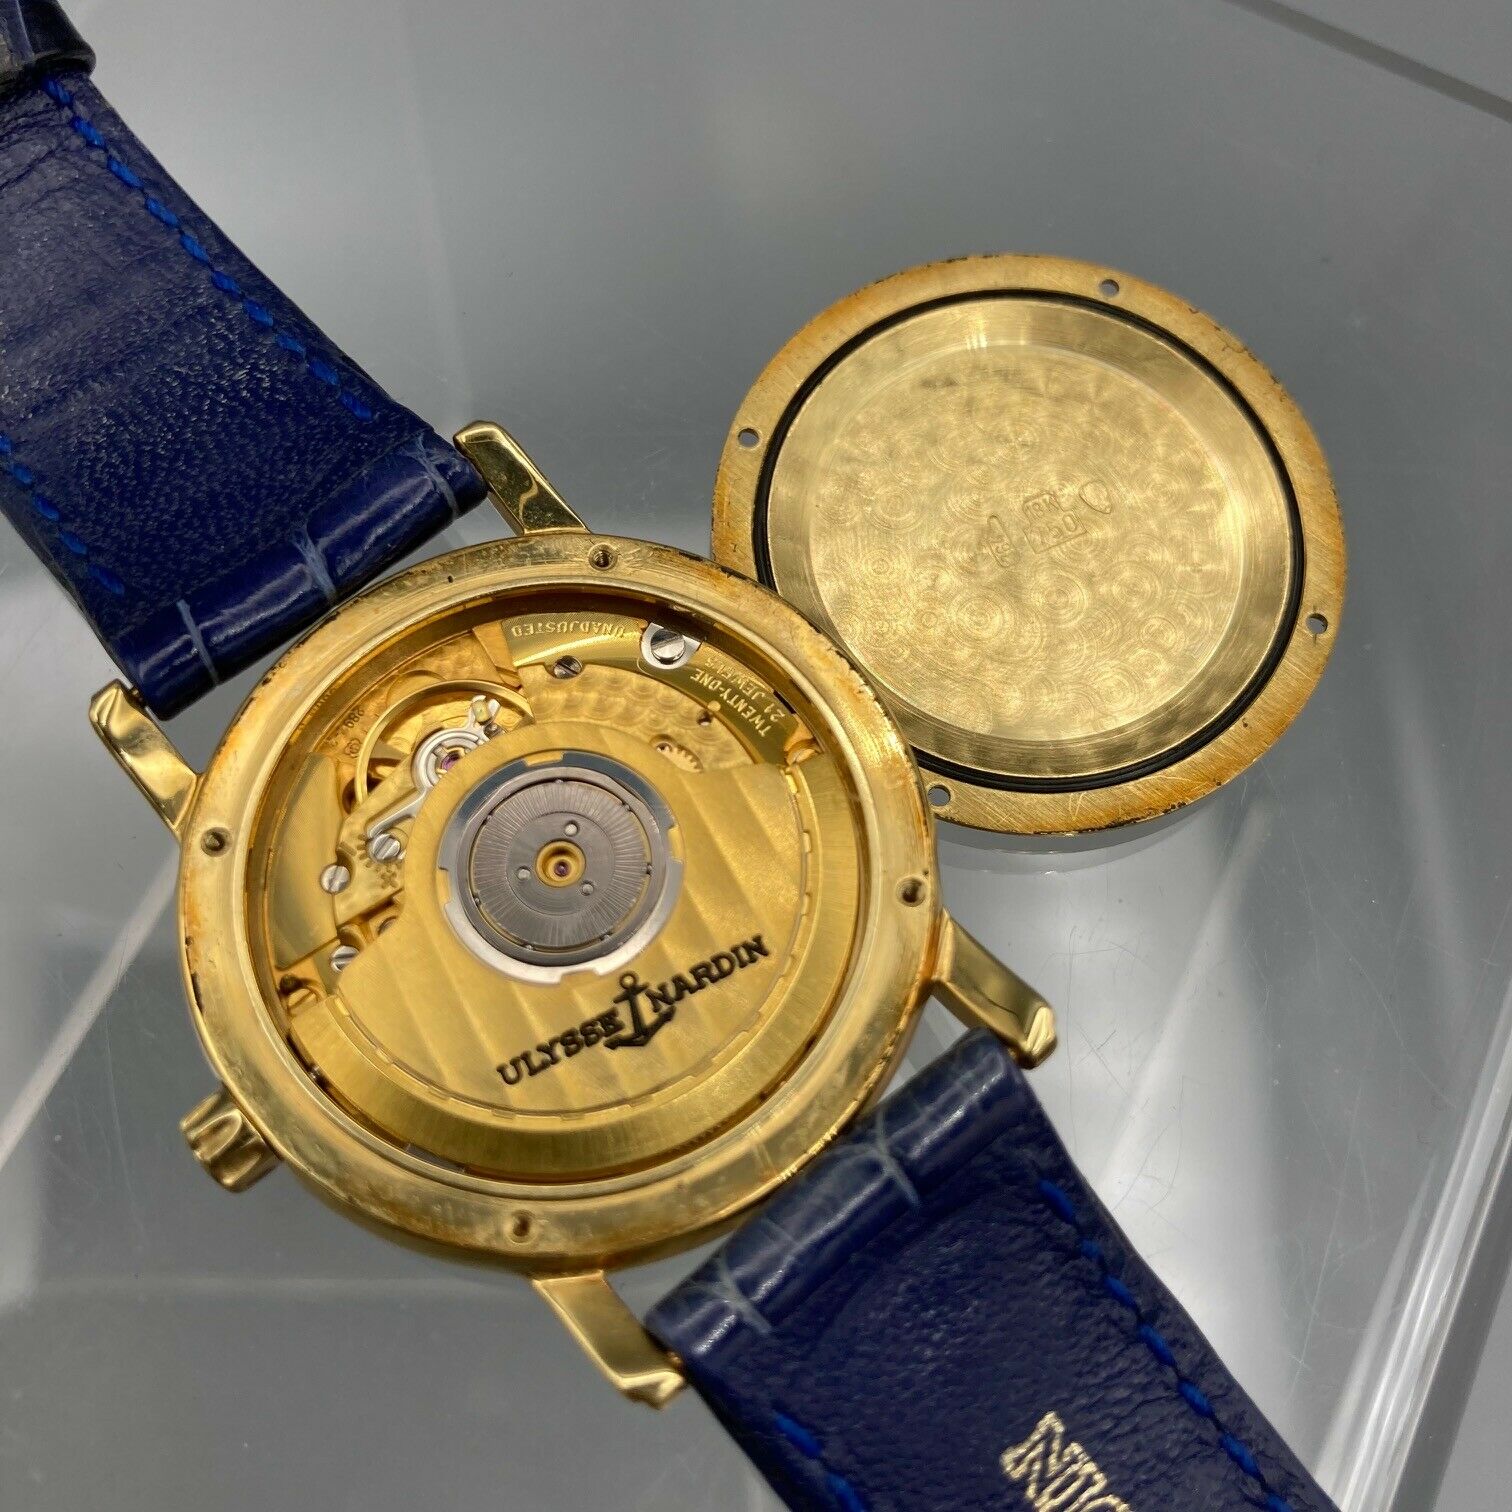 Ulysse Nardin San Marco 18k Gold Watch Ref. 131-88-9